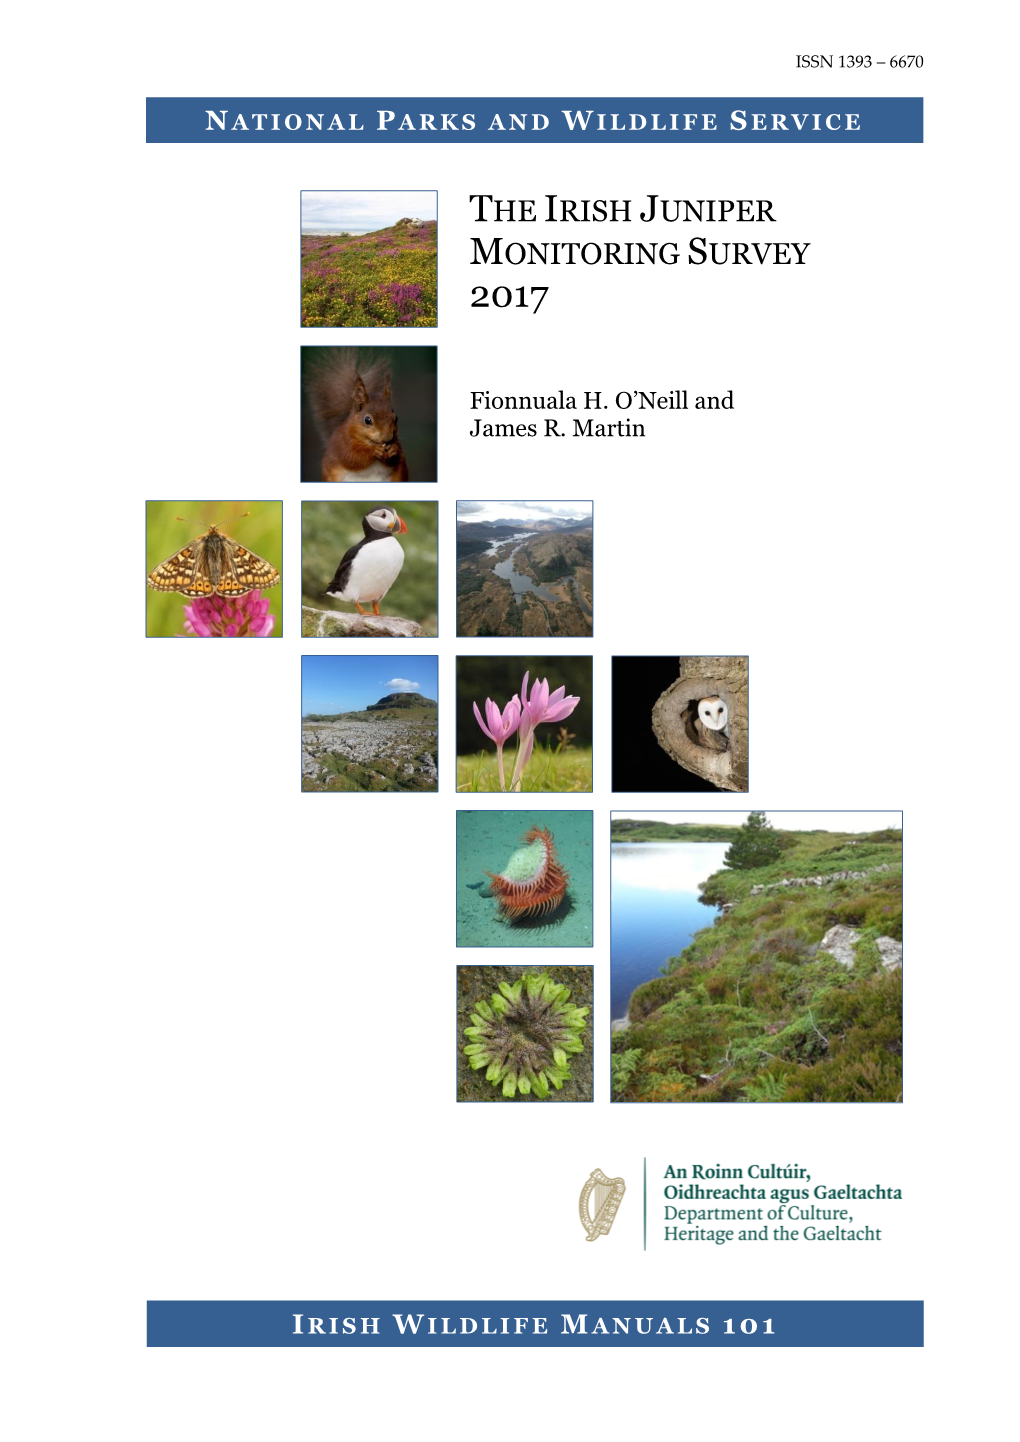 The Irish Juniper Monitoring Survey 2017